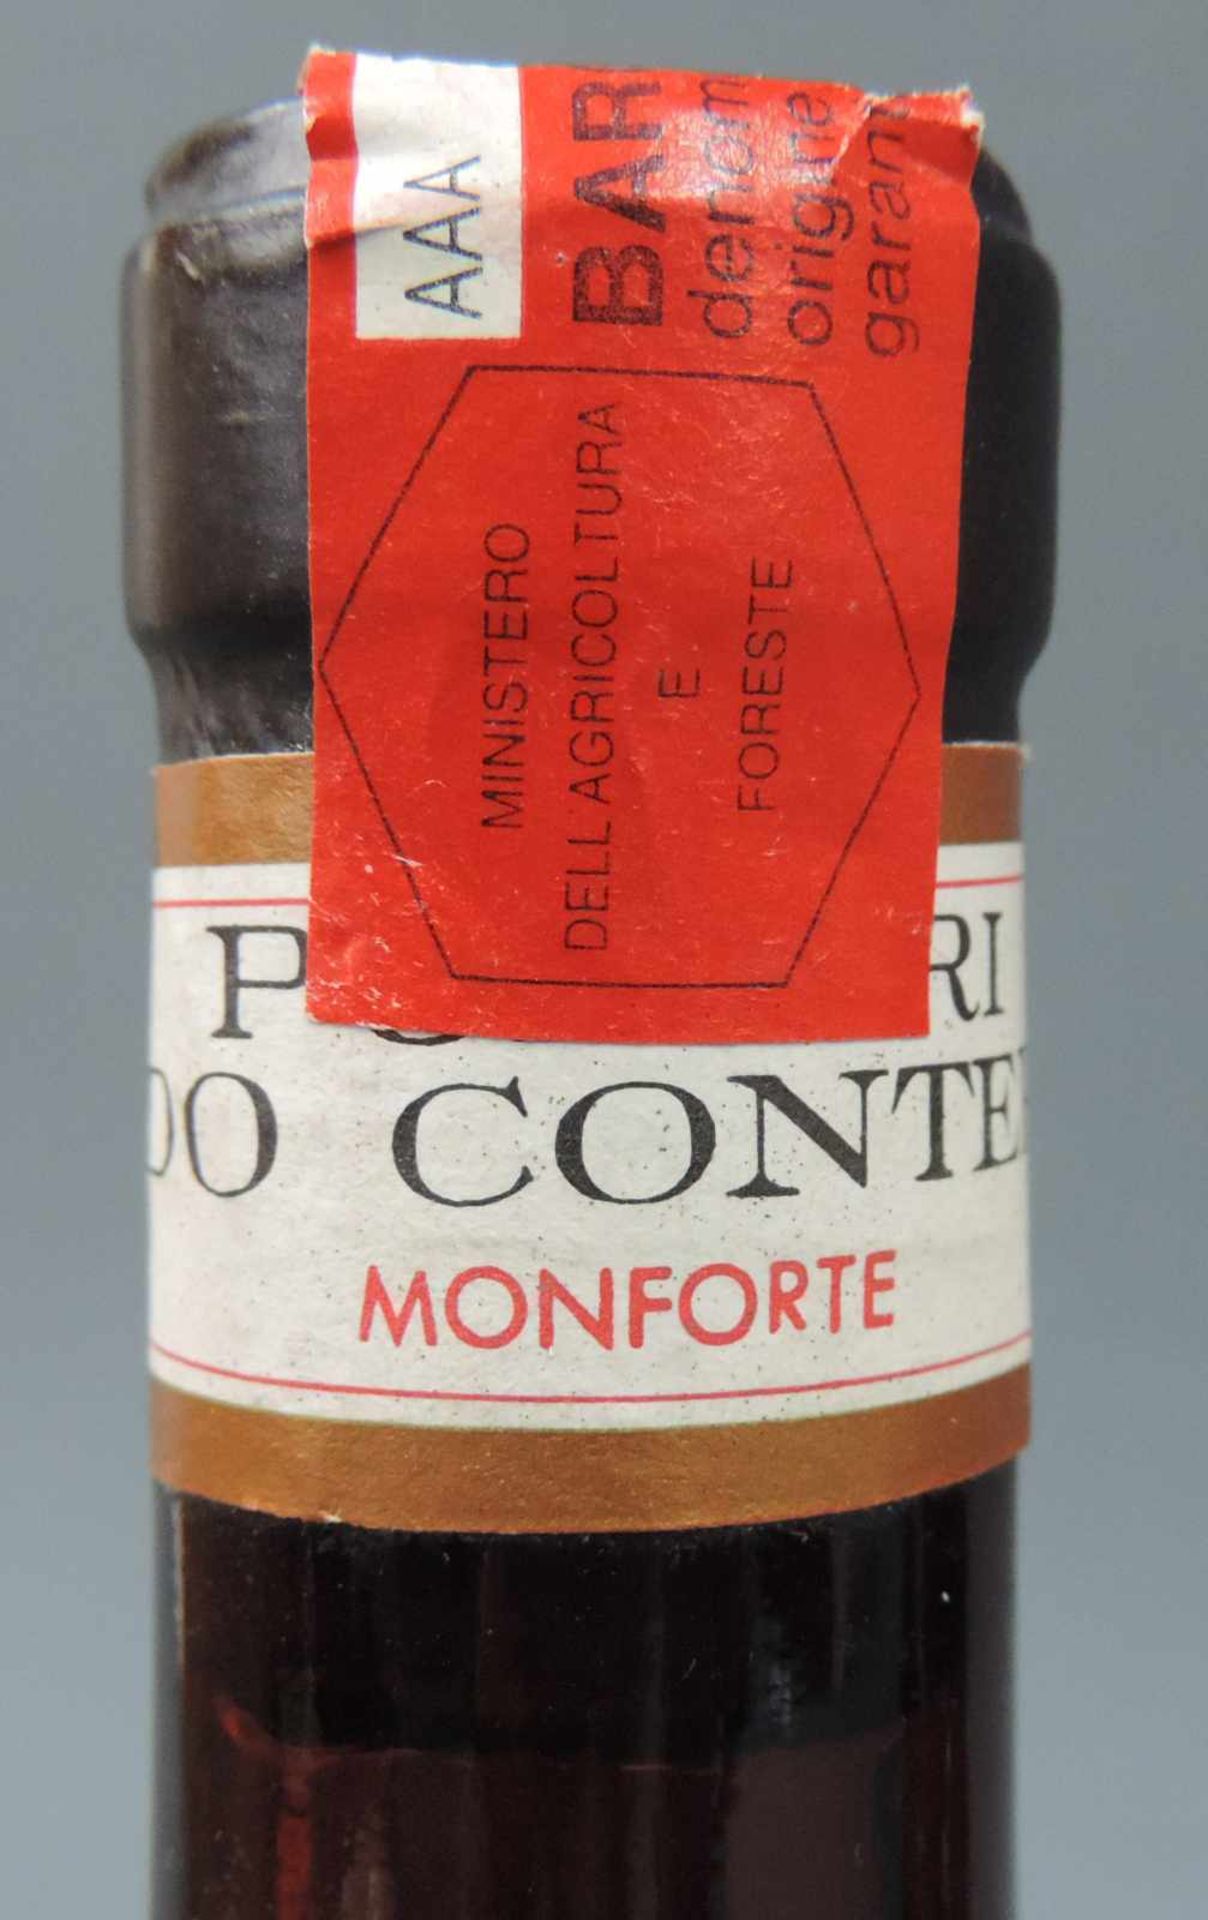 1982 Barolo, DOCG, Italien. Rotwein. 3 ganze Flaschen. 75 cl. 13,5 % Vol. Gute Erscheinung. 1982 - Bild 6 aus 6